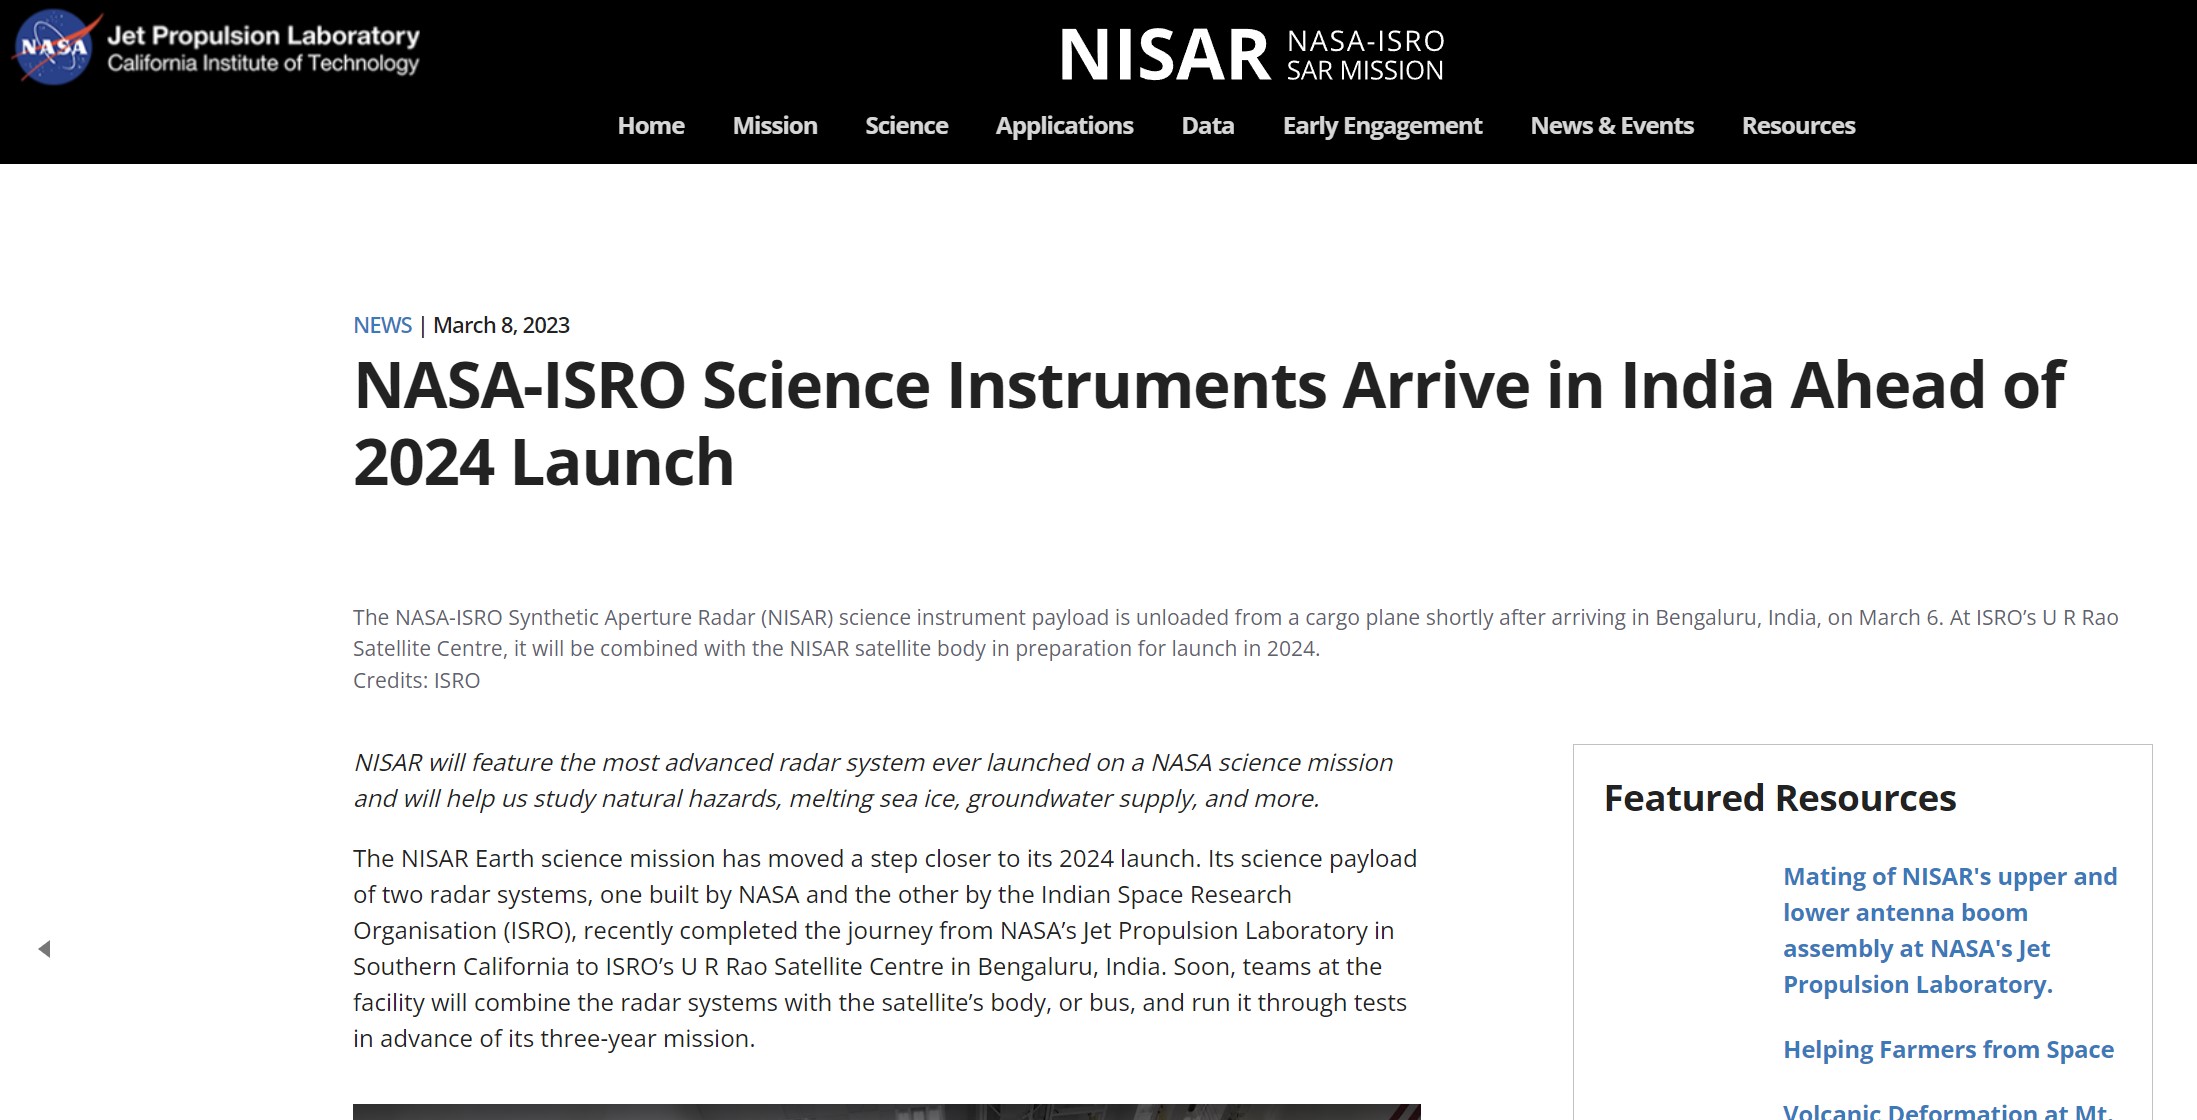 Κοινή αποστολή στο διάστημα για Ινδία και ΗΠΑ! Υπογράφονται οι συμφωνίες Άρτεμις μεταξύ ISRO-NASA